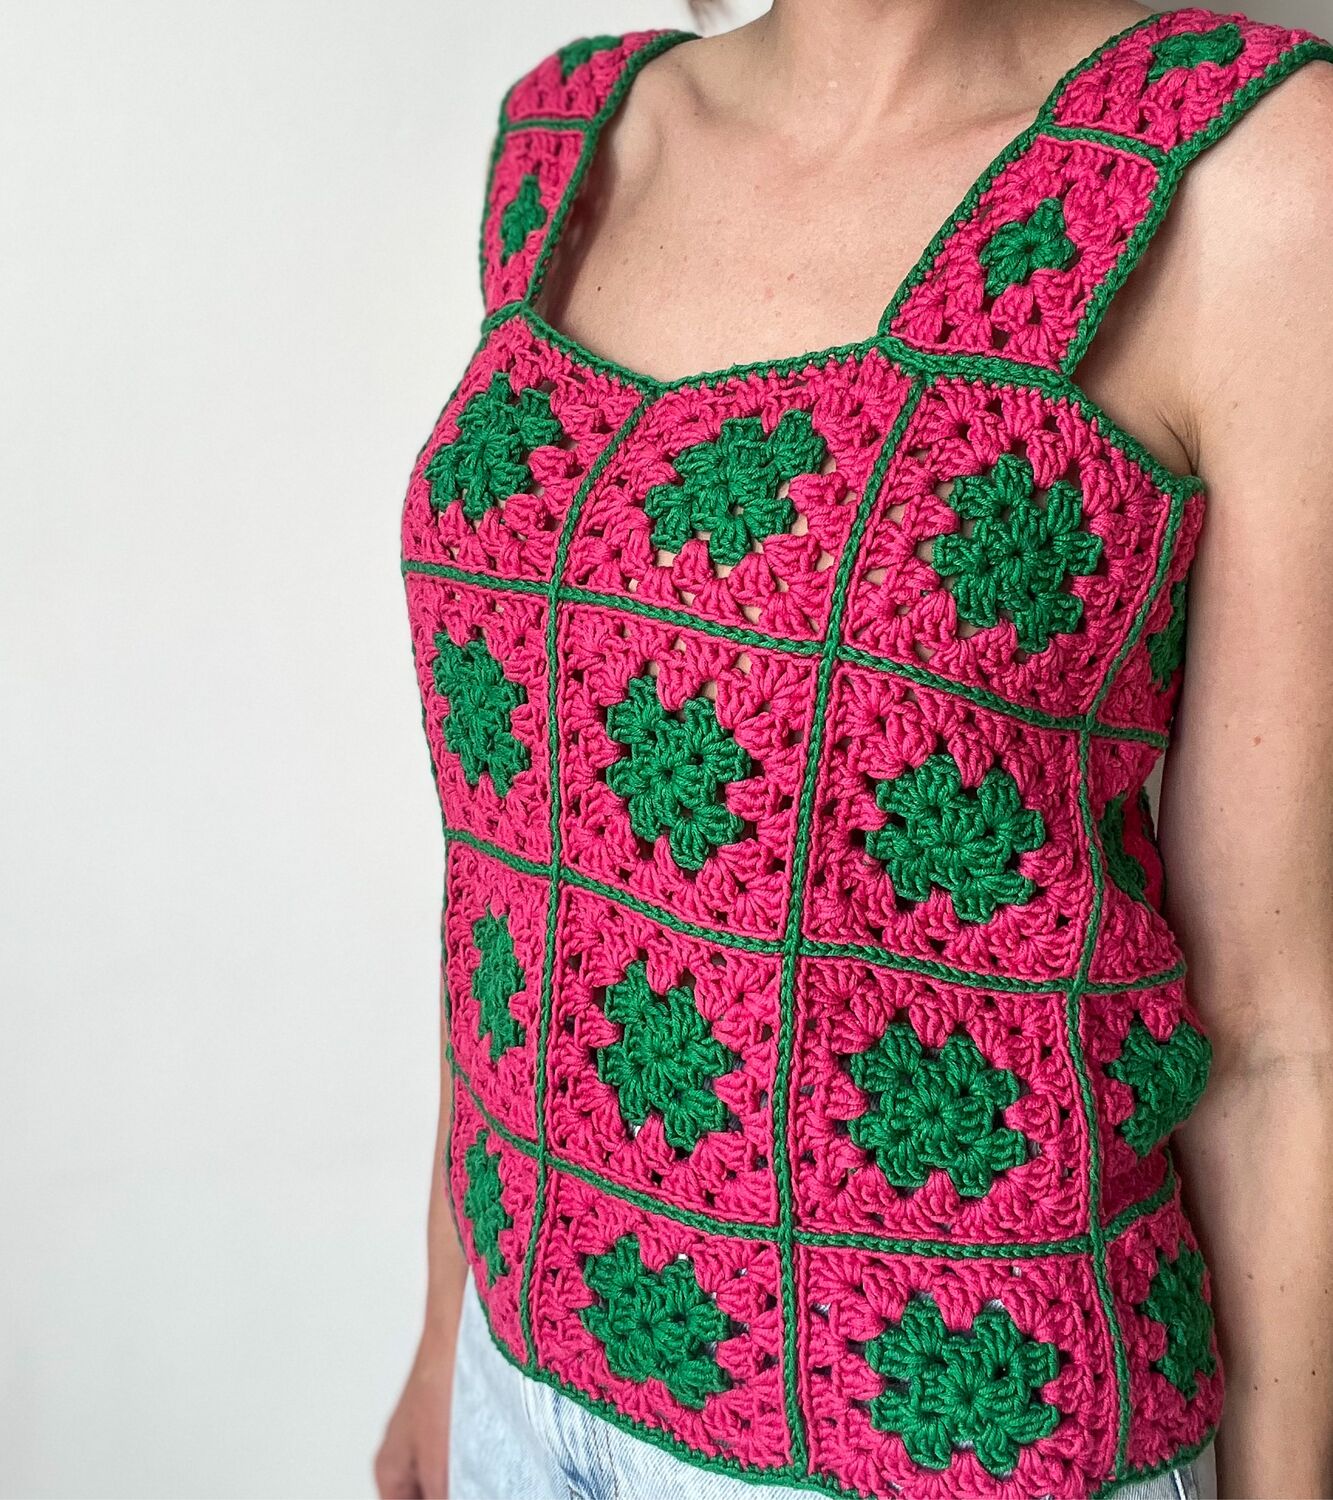 Как связать блузку.Кофточка летняя - 1 часть - Crochet blouse summer - вязание крючком из мотивов